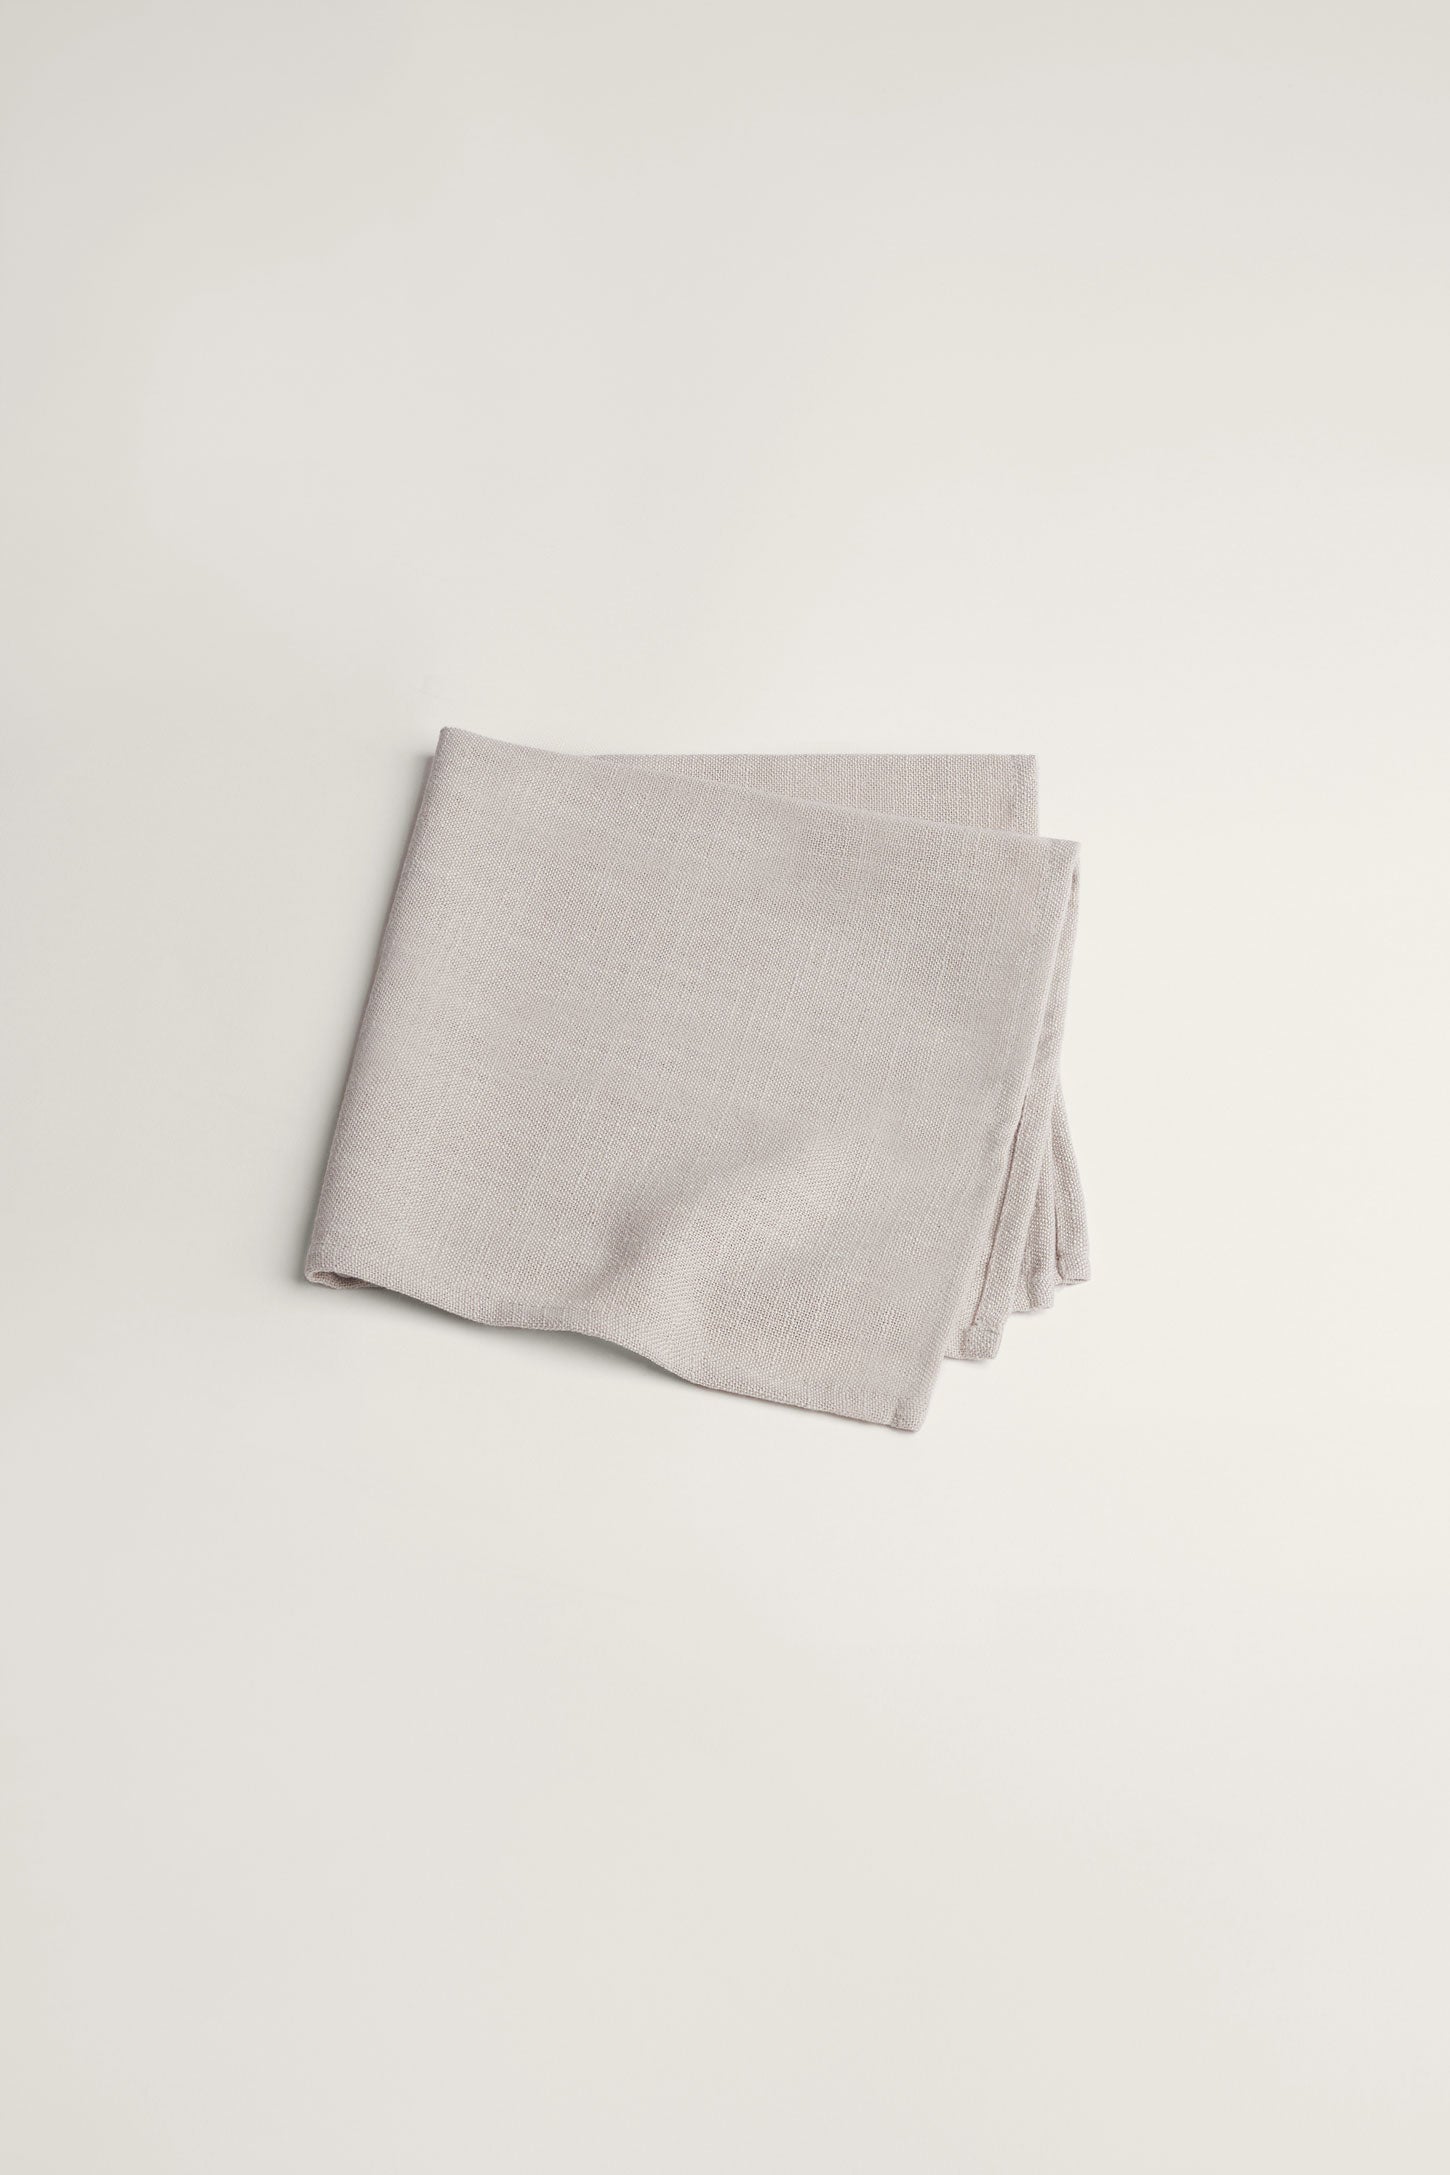 Paquet de 4 serviettes de table texture lin, 2/20$ - Maison && OATMEAL